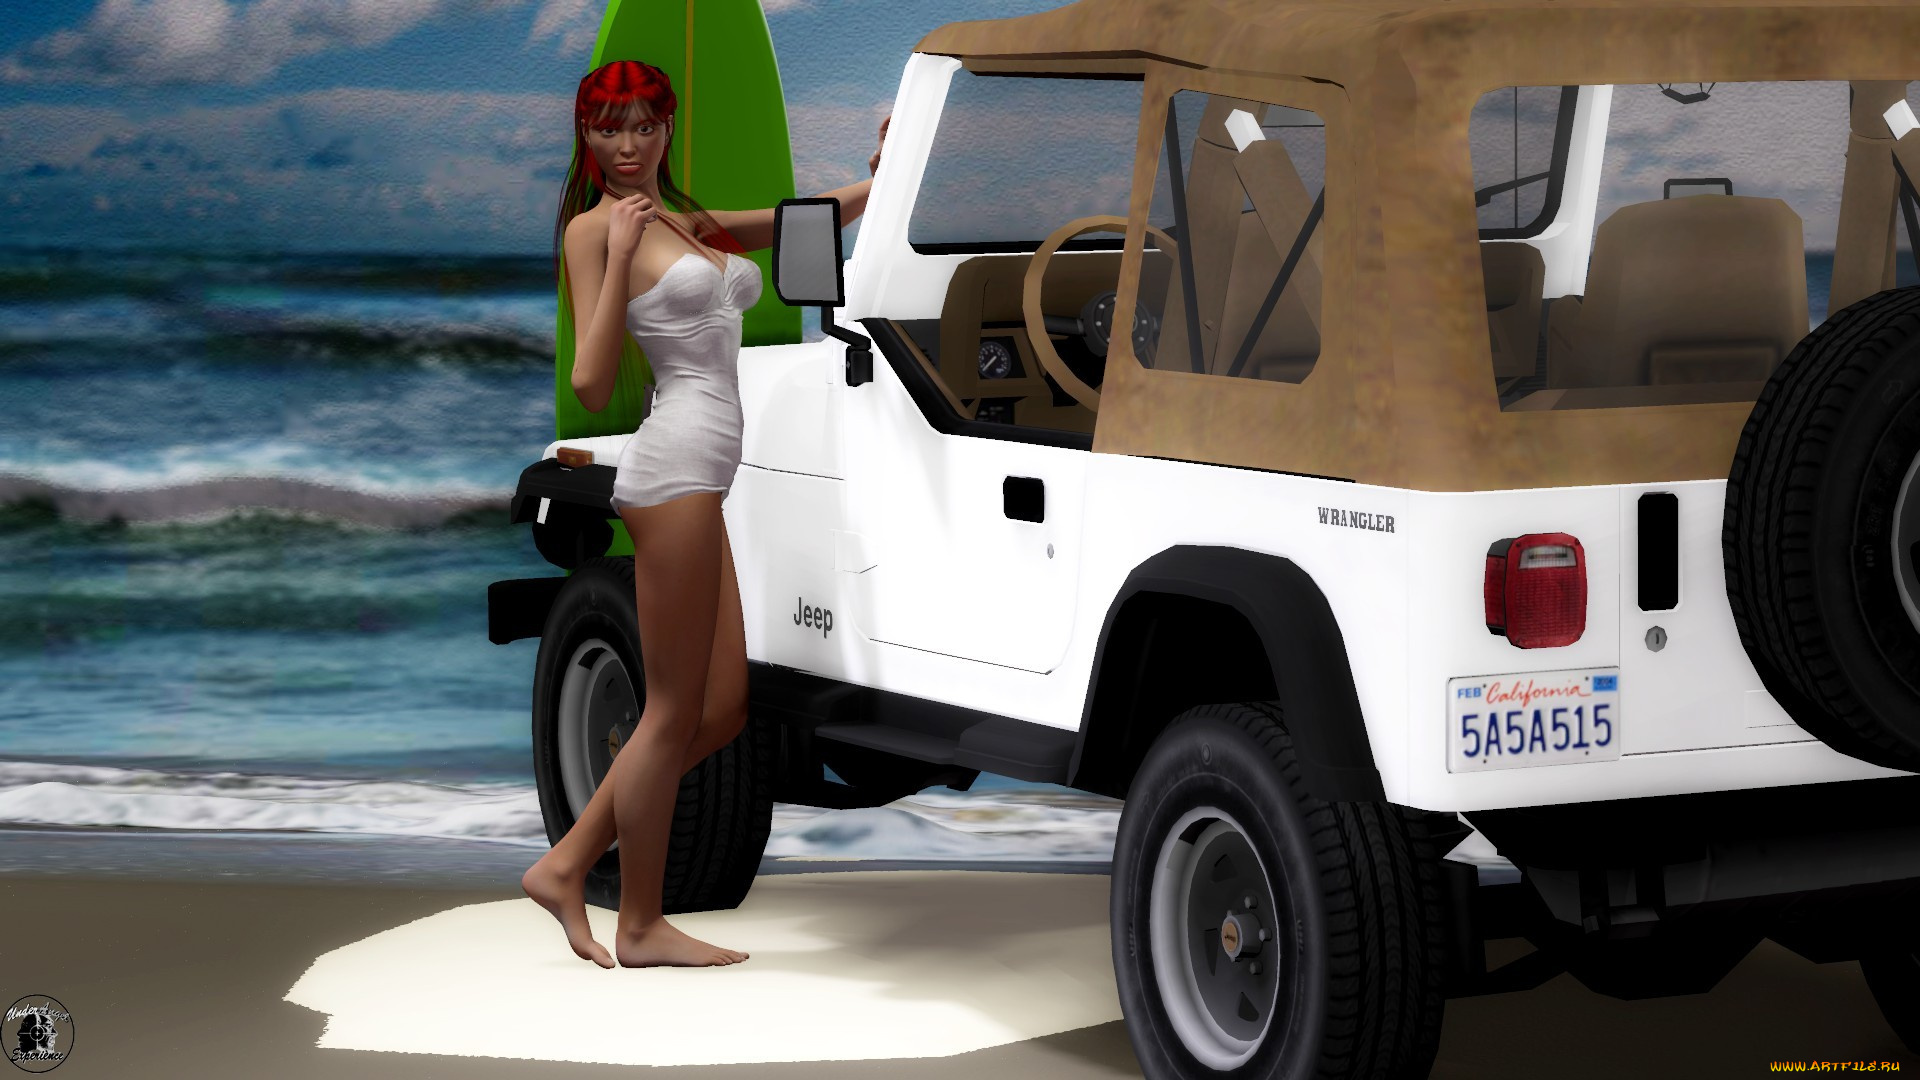 автомобили, 3d, car&girl, девушка, взгляд, фон, рыжая, автомобиль, песок, пляж, море, купальник, доска